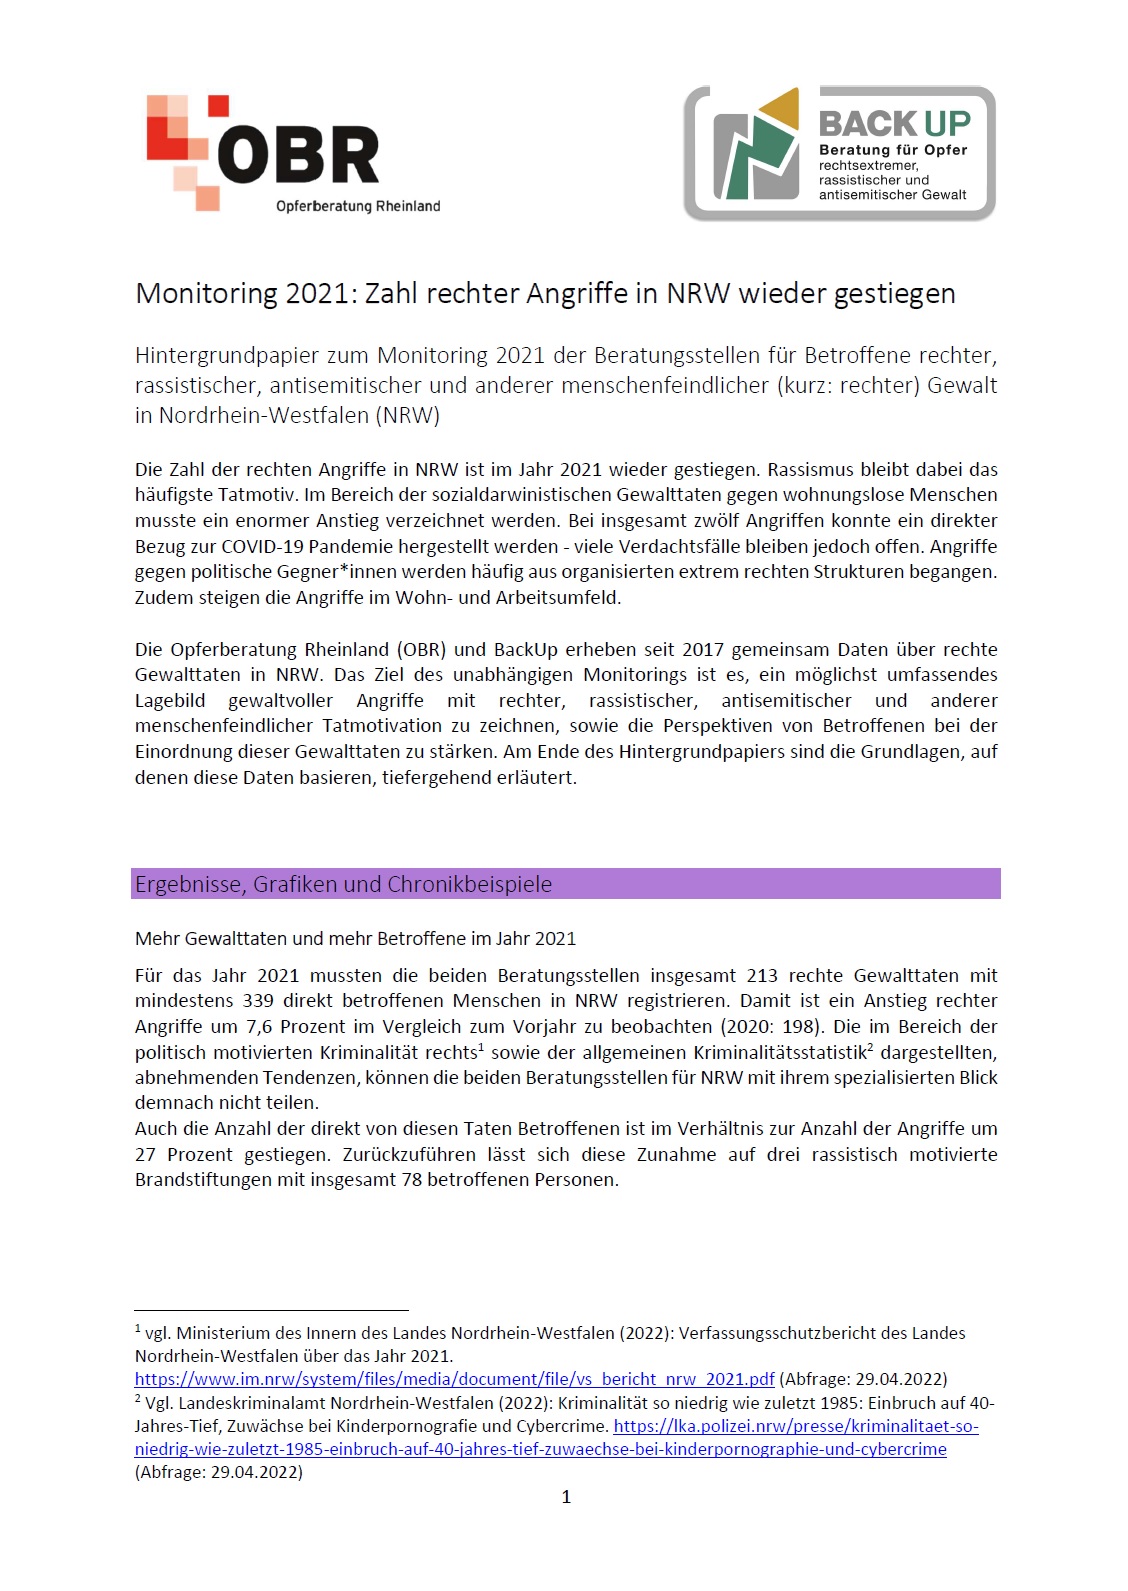 Auf dem Bild sieht man die erste Seite des Beitrages zu Monitoring 2021 rechter Gewalt in NRW.